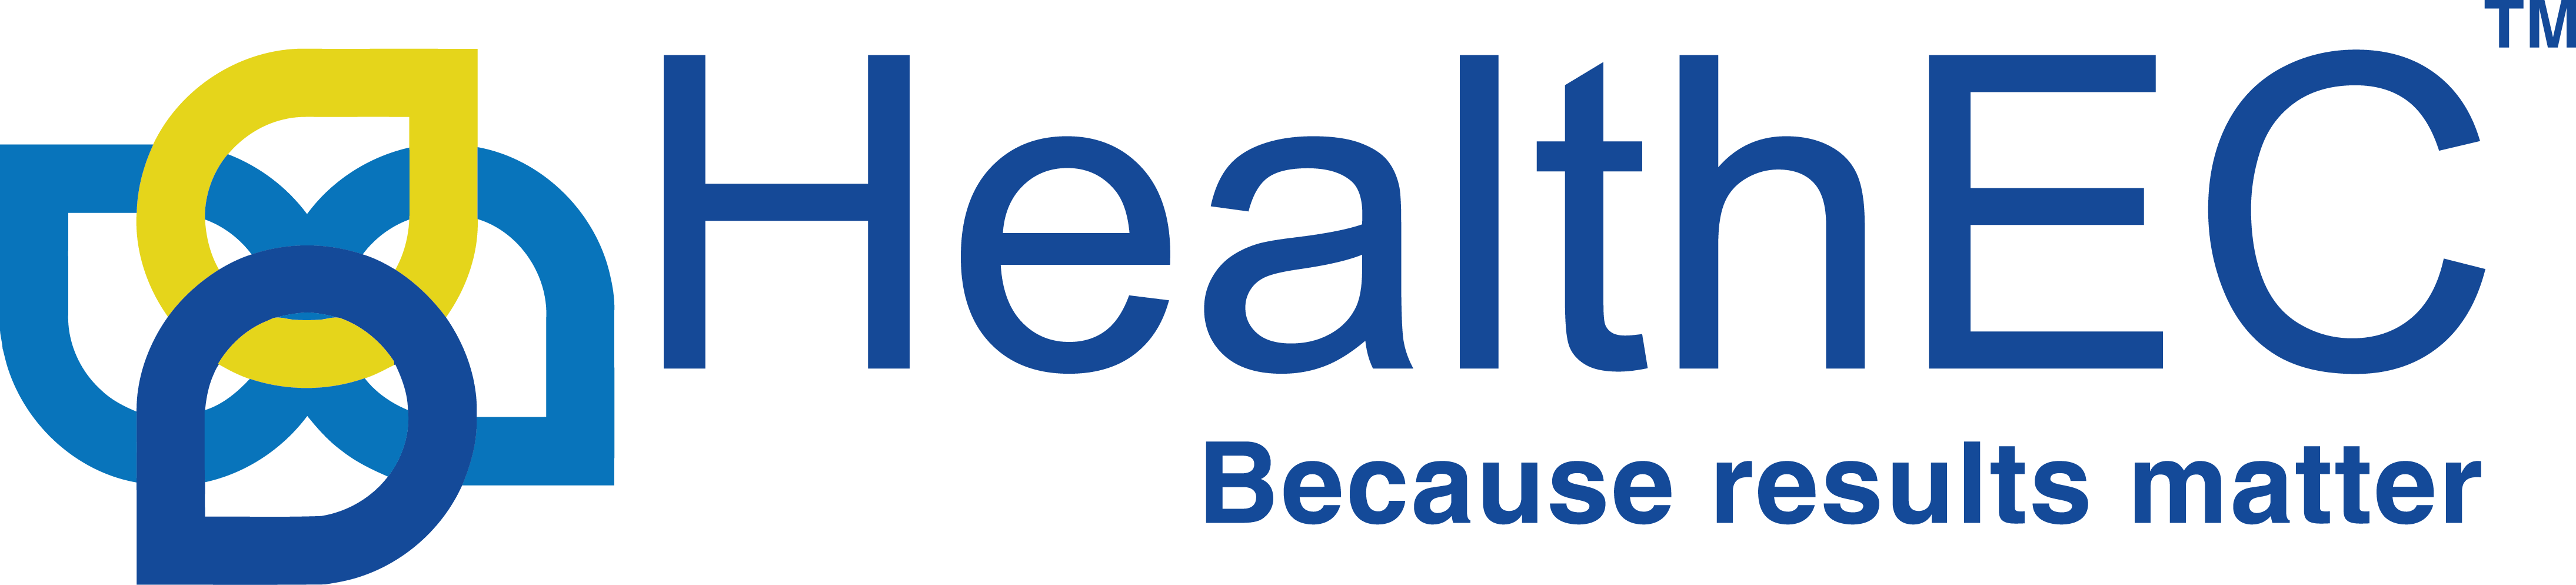 HealthEC-Logo-Tagline-June-2017.png